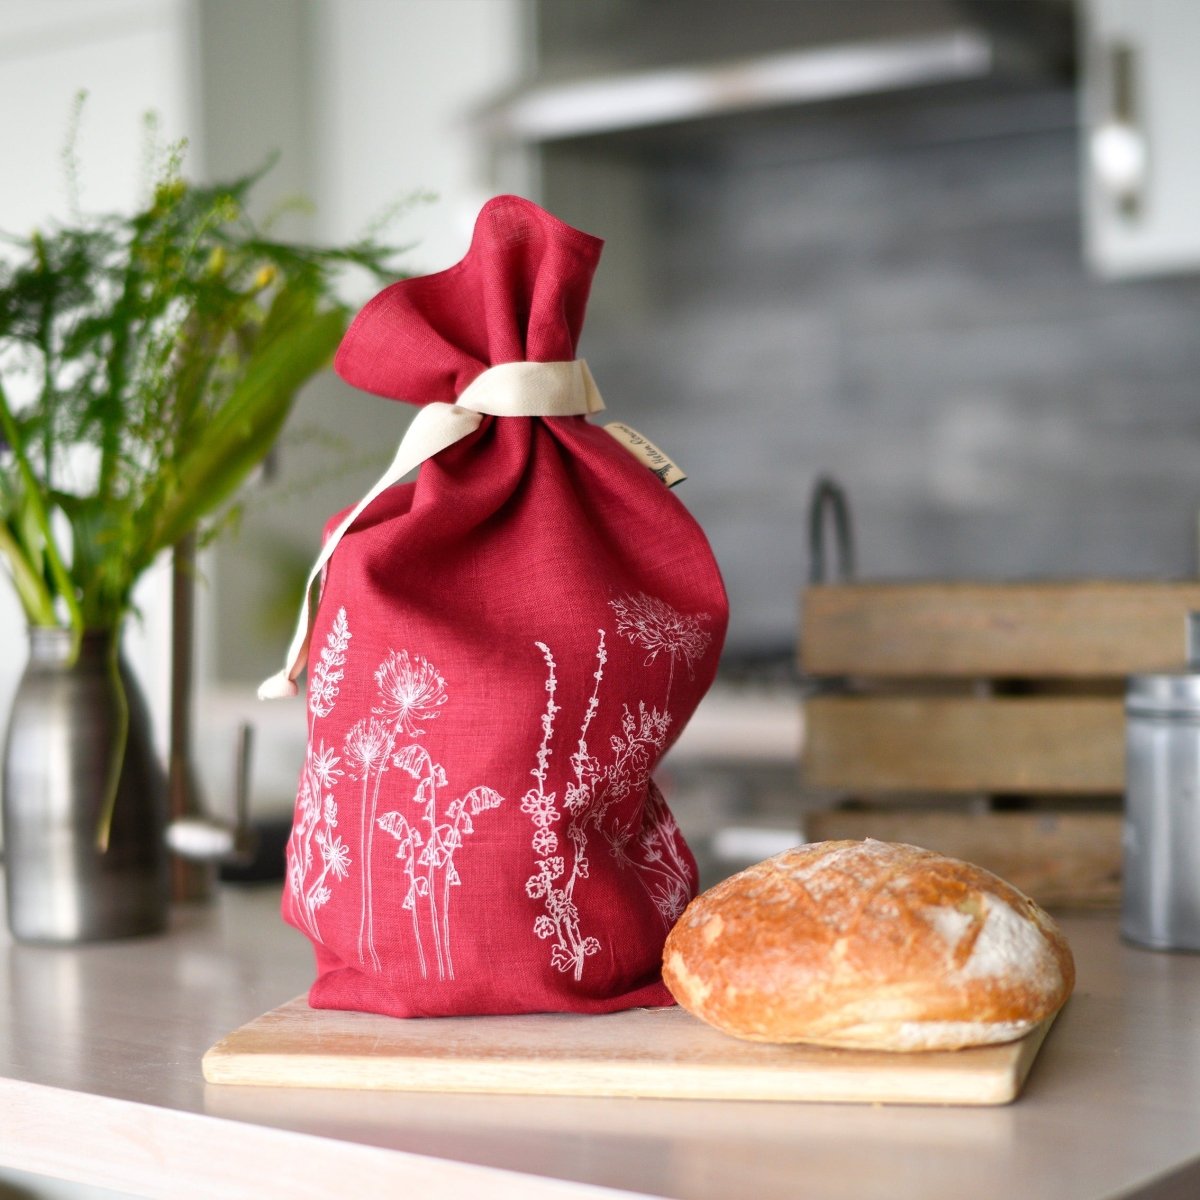 Breathable Linen Bread Bag Garden Design